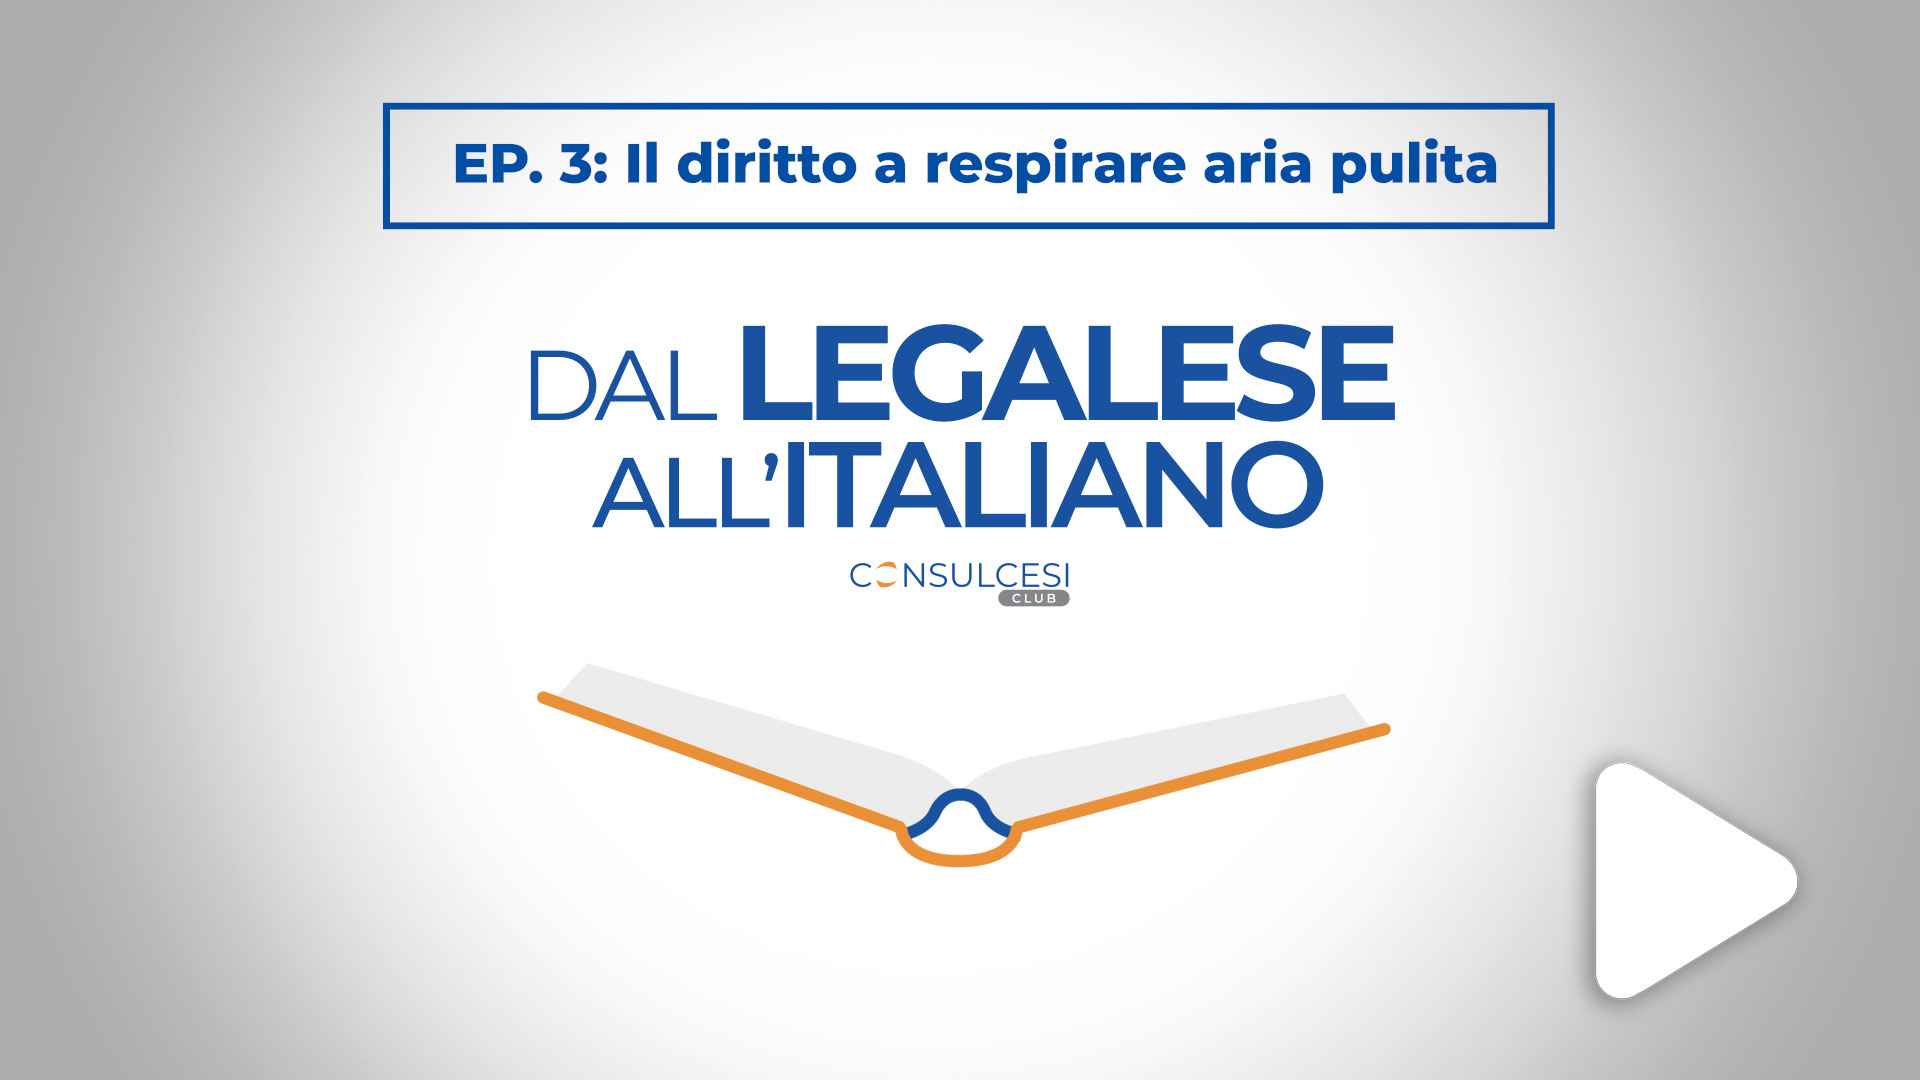 Dal legalese all'italiano: Ep. 3 Il diritto a respirare aria pulita